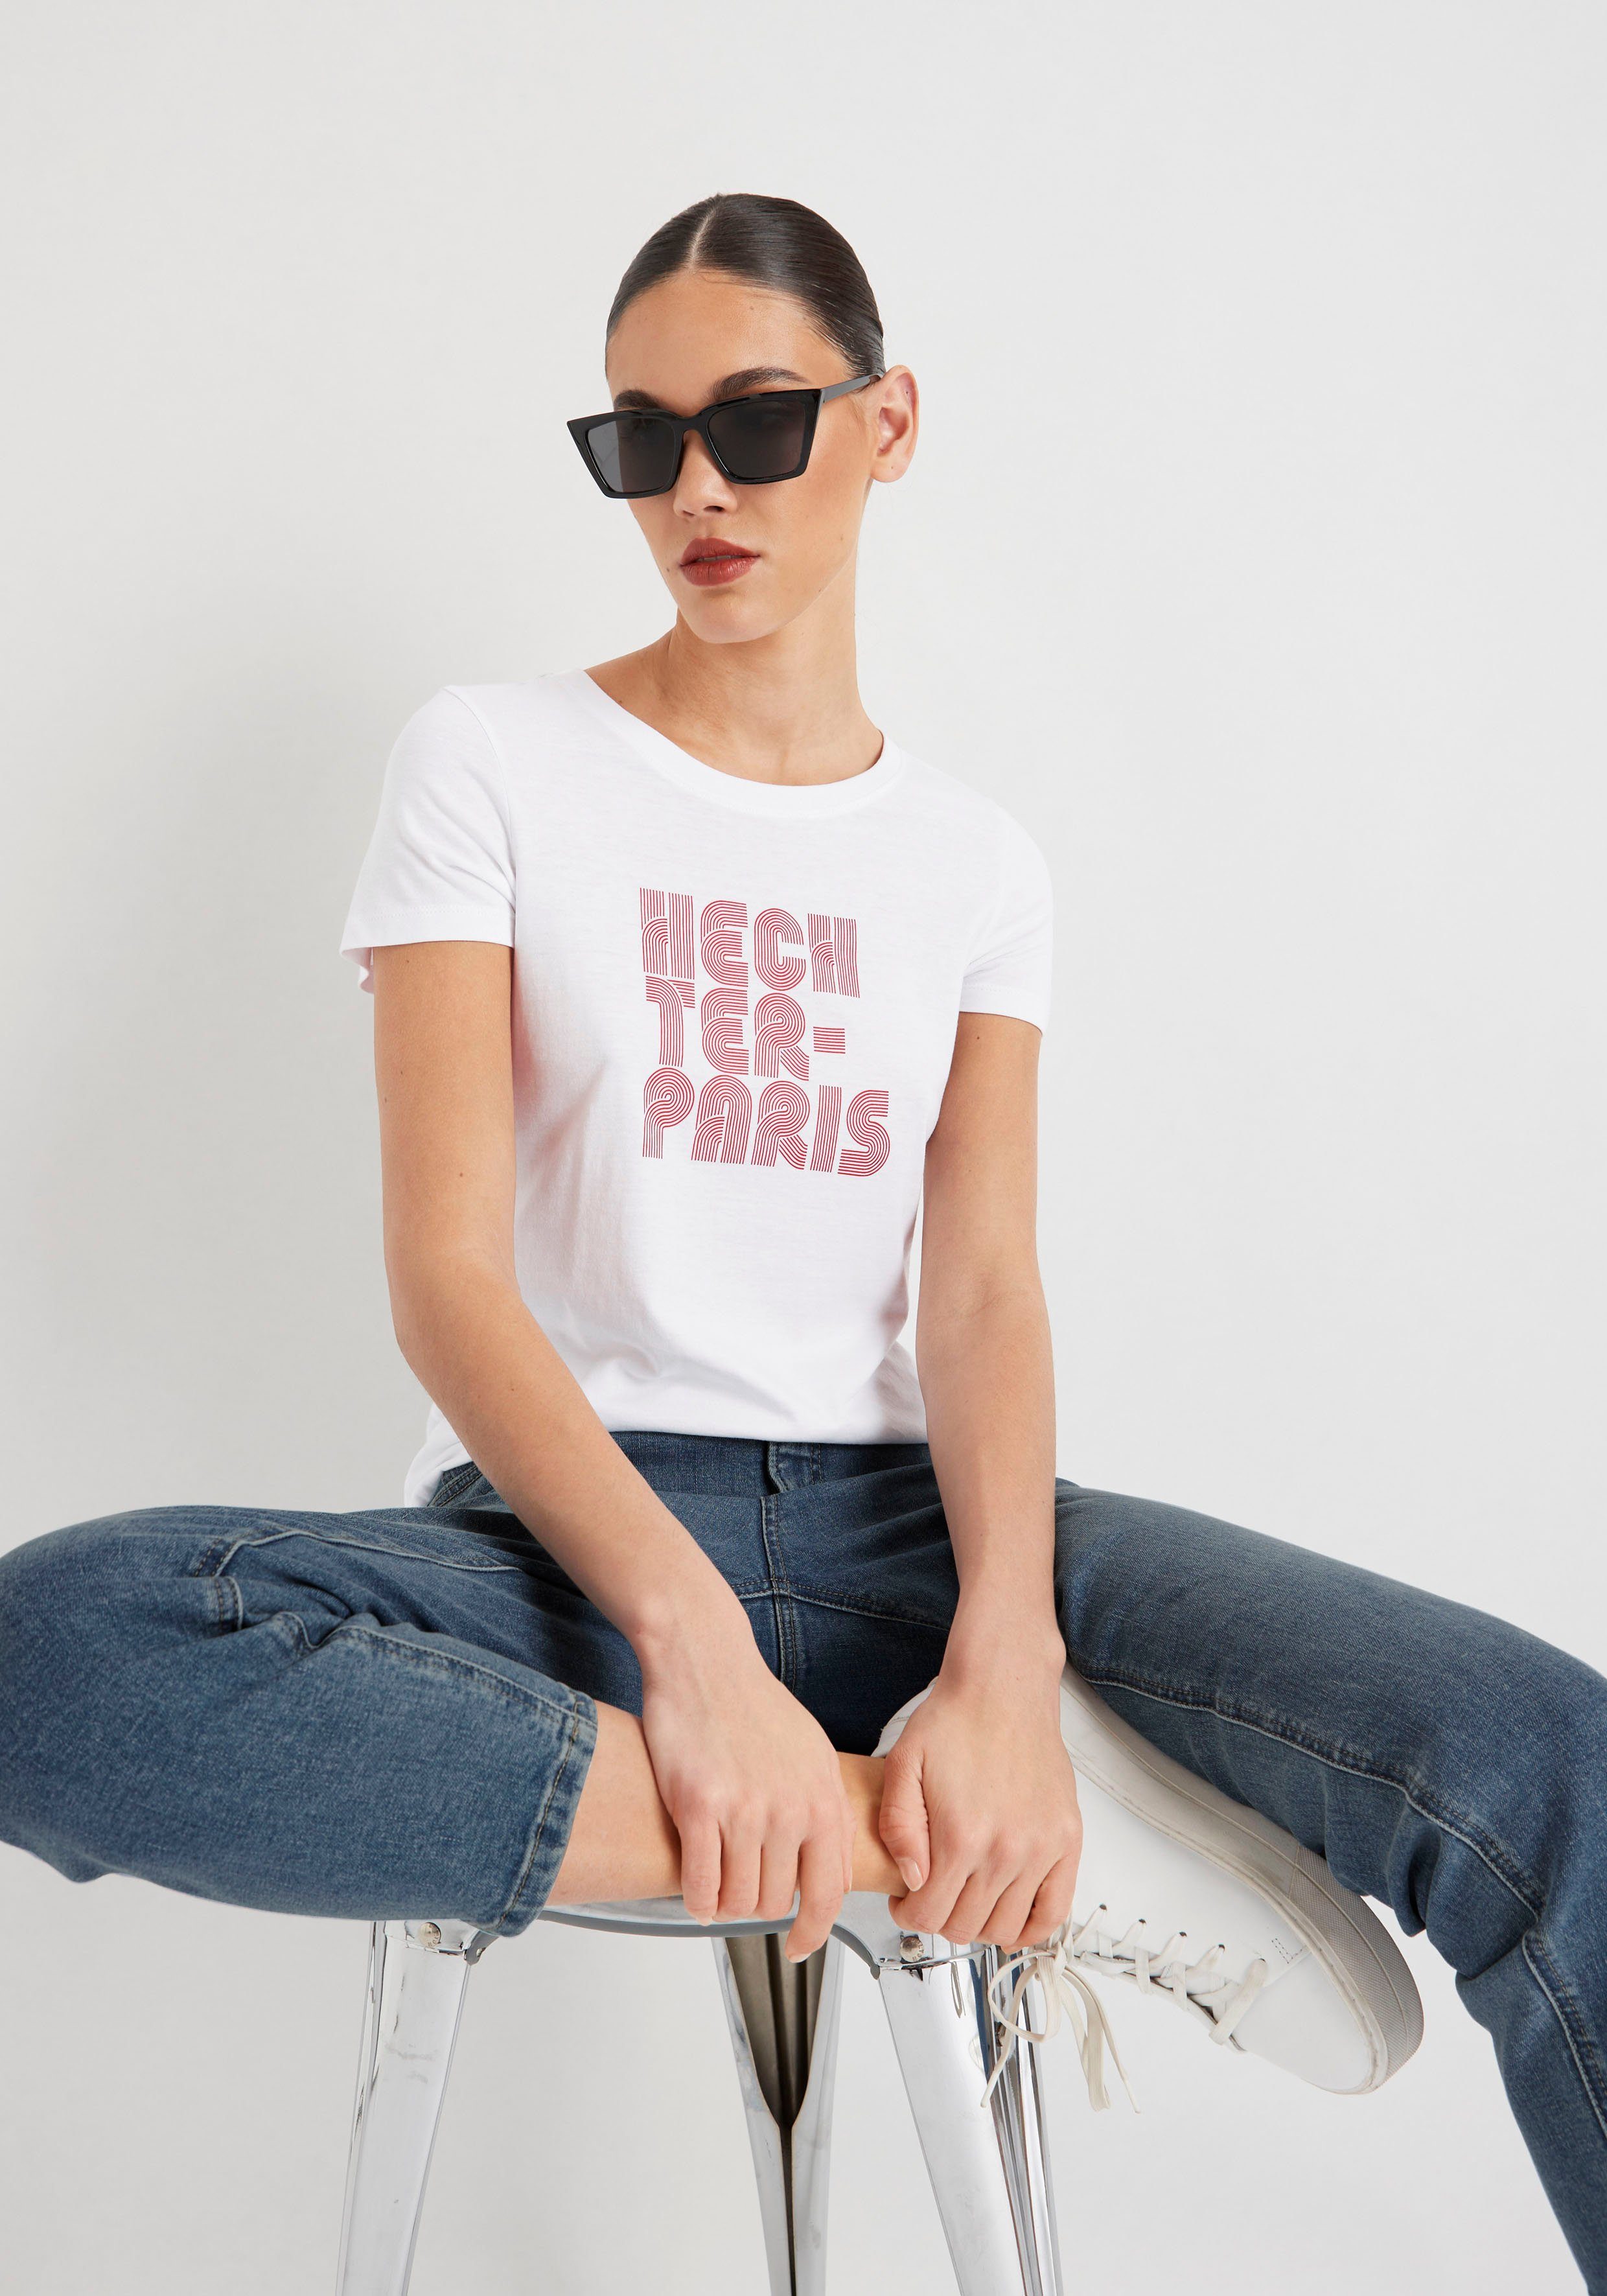 T-Shirt PARIS weiß-rot mit HECHTER Druck